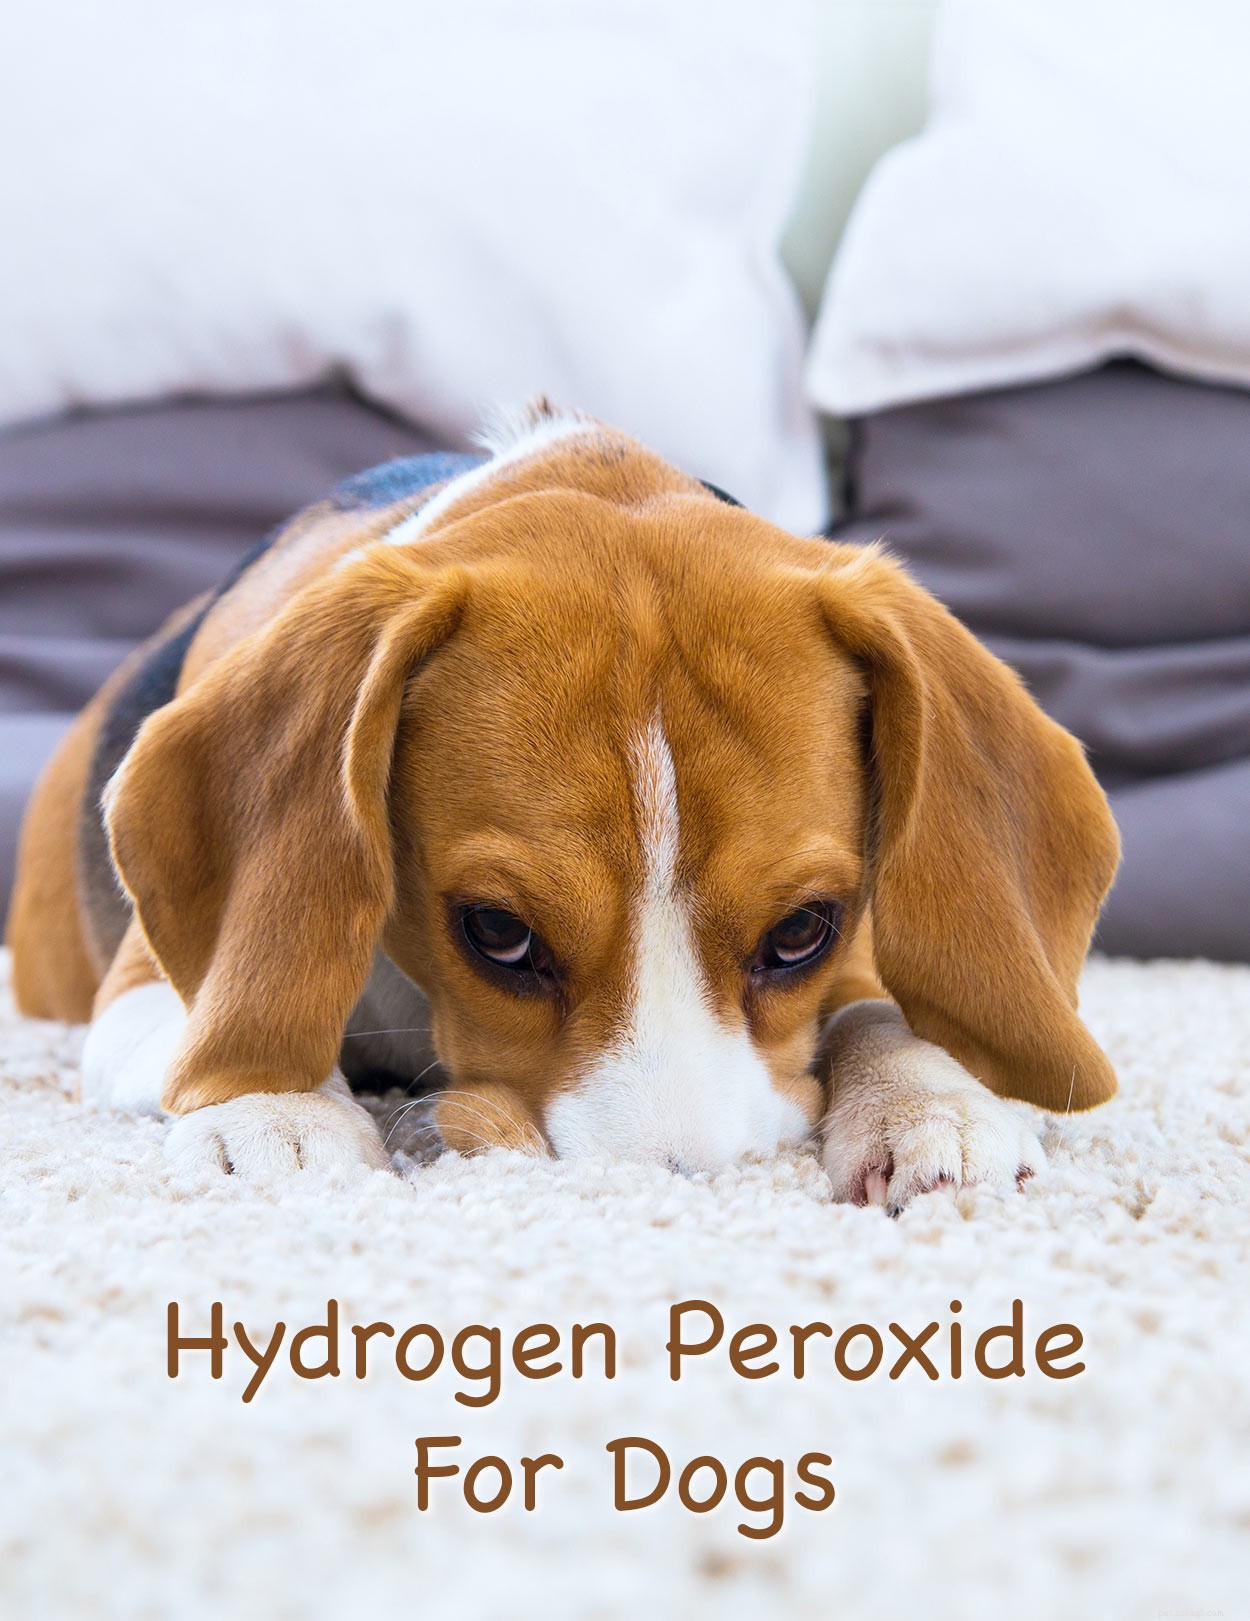 Väteperoxid för hundar – vad kan jag använda det till på ett säkert sätt?